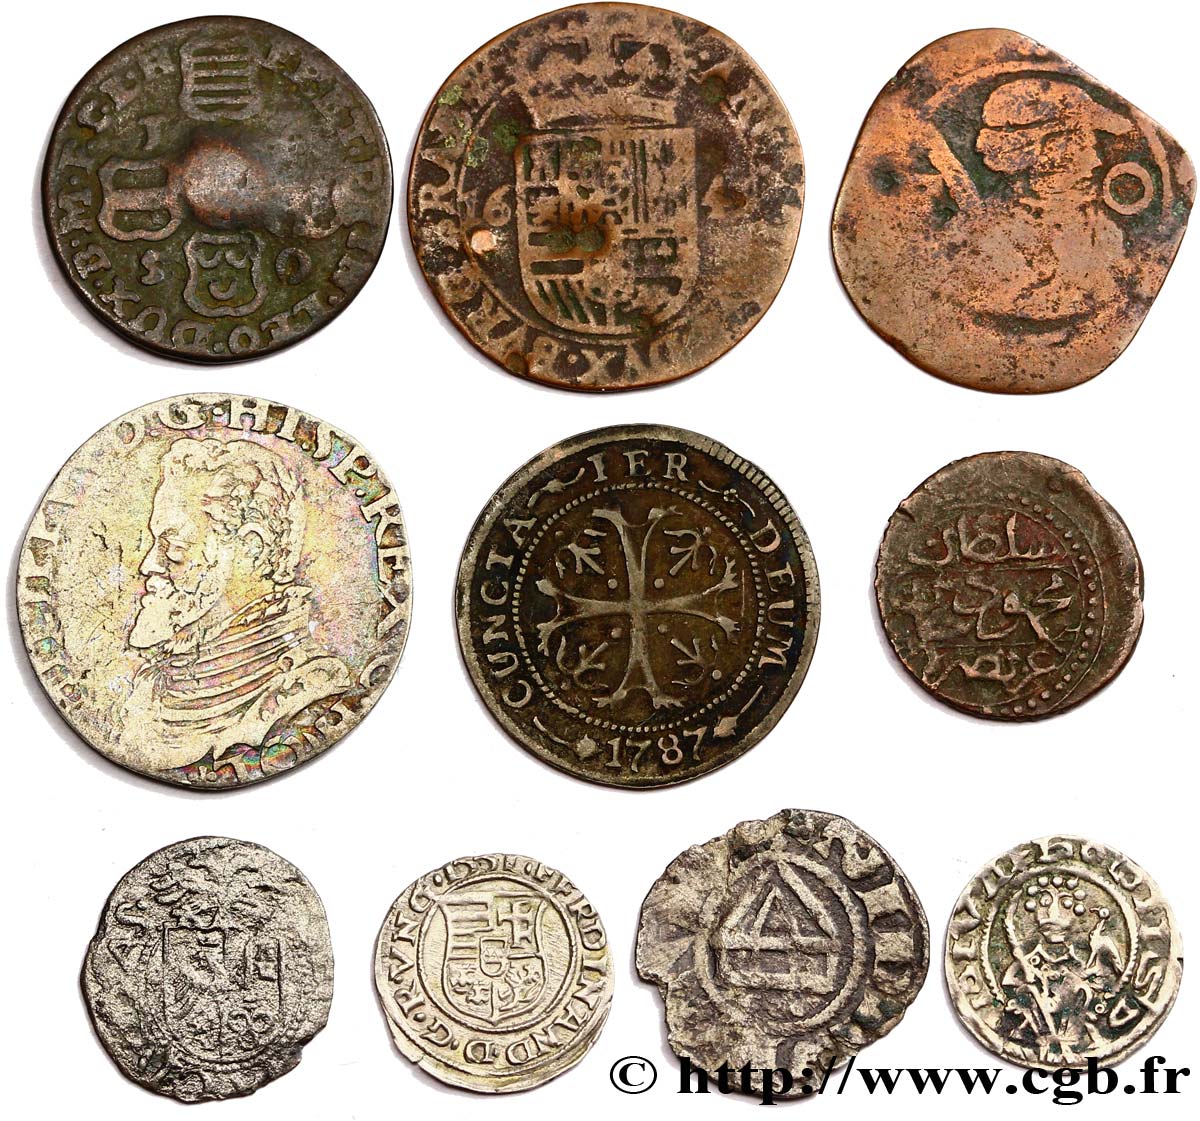 LOTS Dix monnaies royales étrangères, états et métaux divers n.d.  